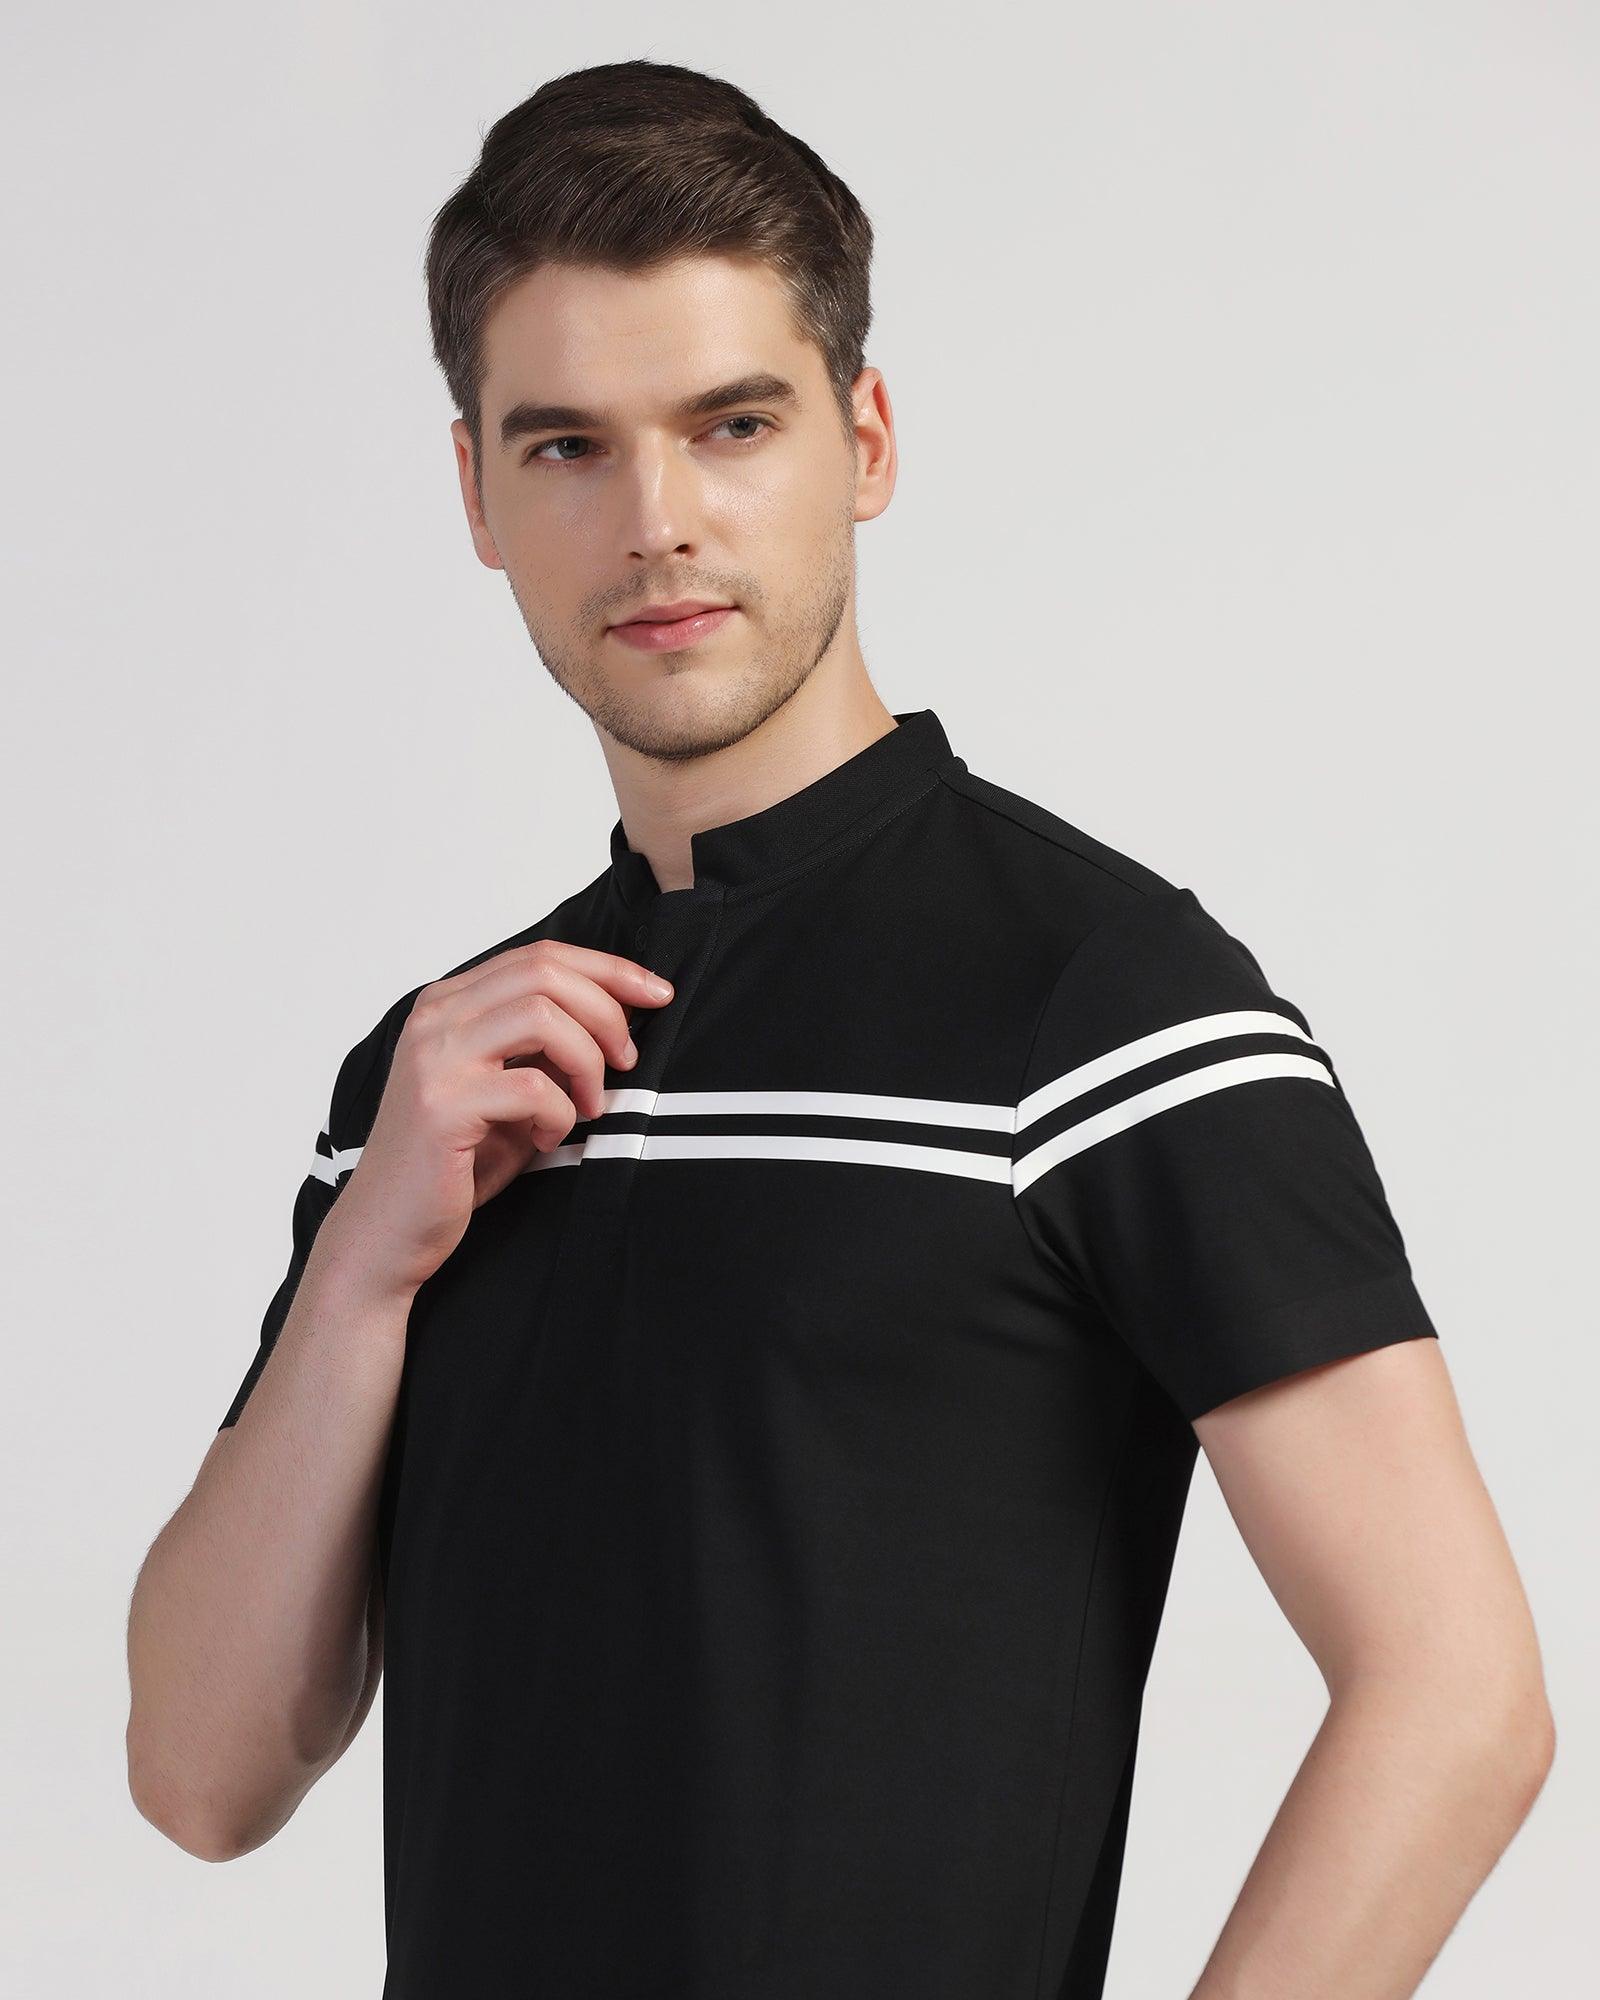 TechPro Polo Black Stripe T-Shirt - Saylor